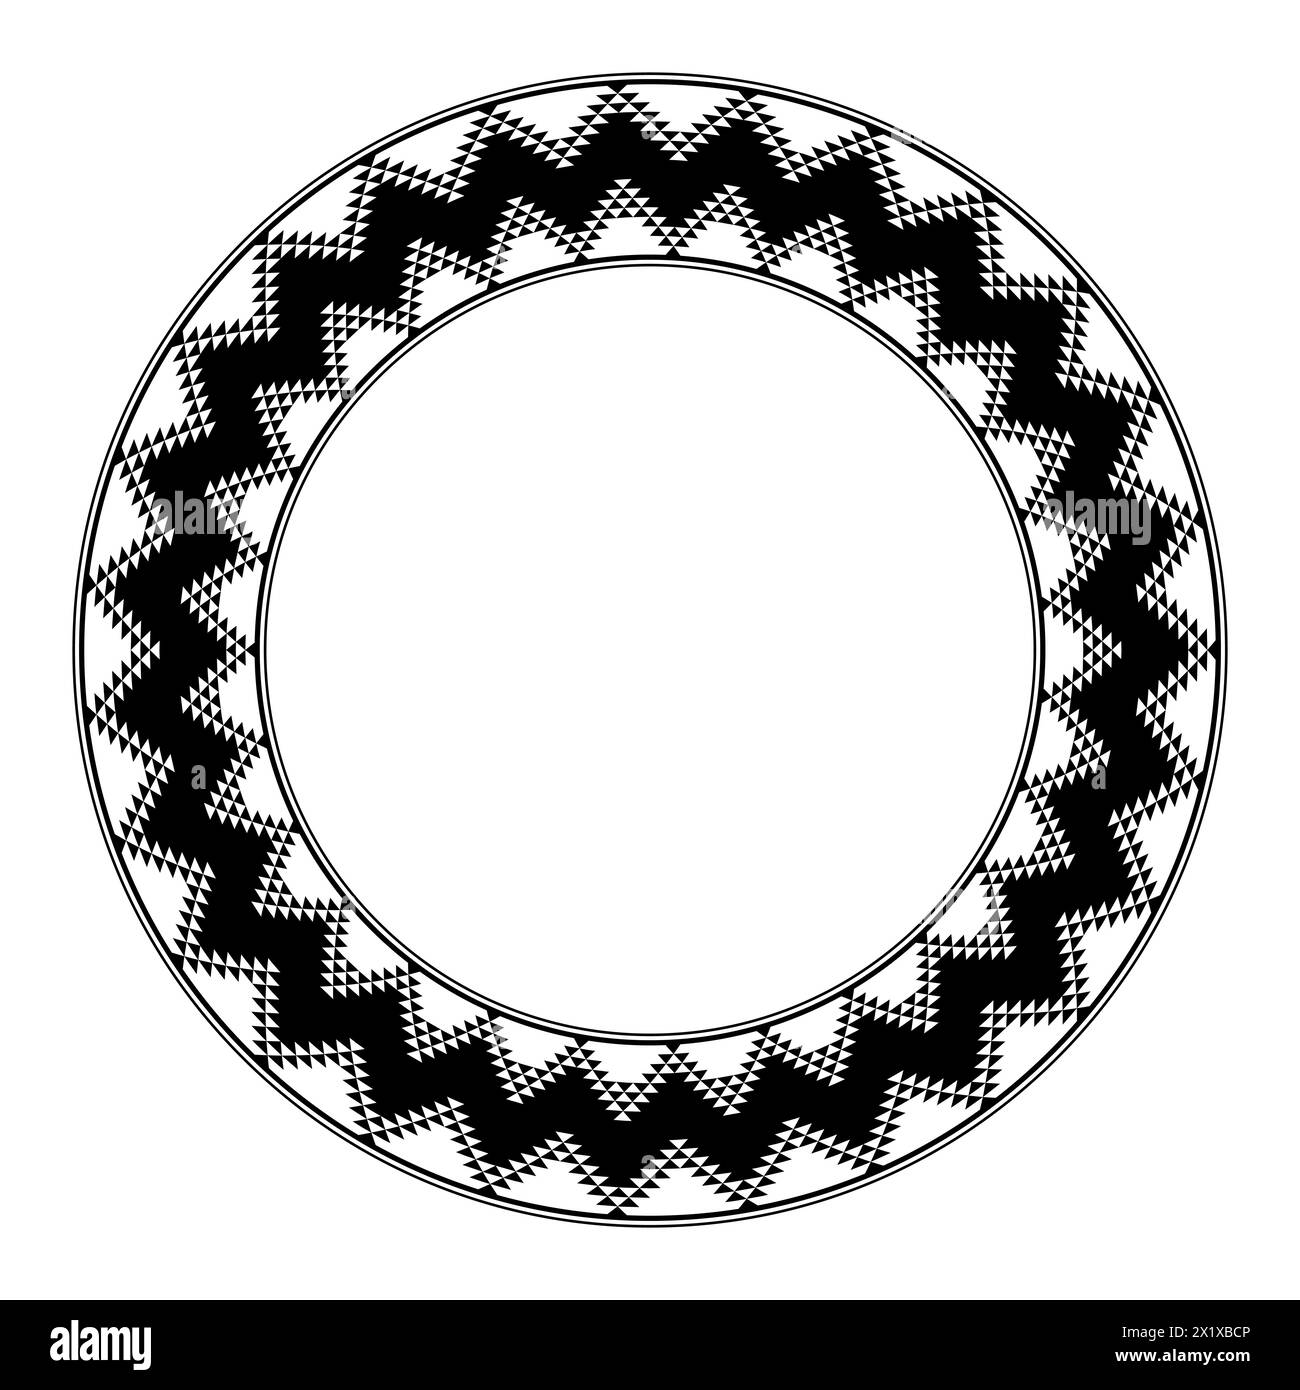 Anasazi-Muster, kreisförmiger Rahmen. Dekorative Grenze das typische Design der alten Puebloans, einer Kultur der amerikanischen Ureinwohner. Stockfoto